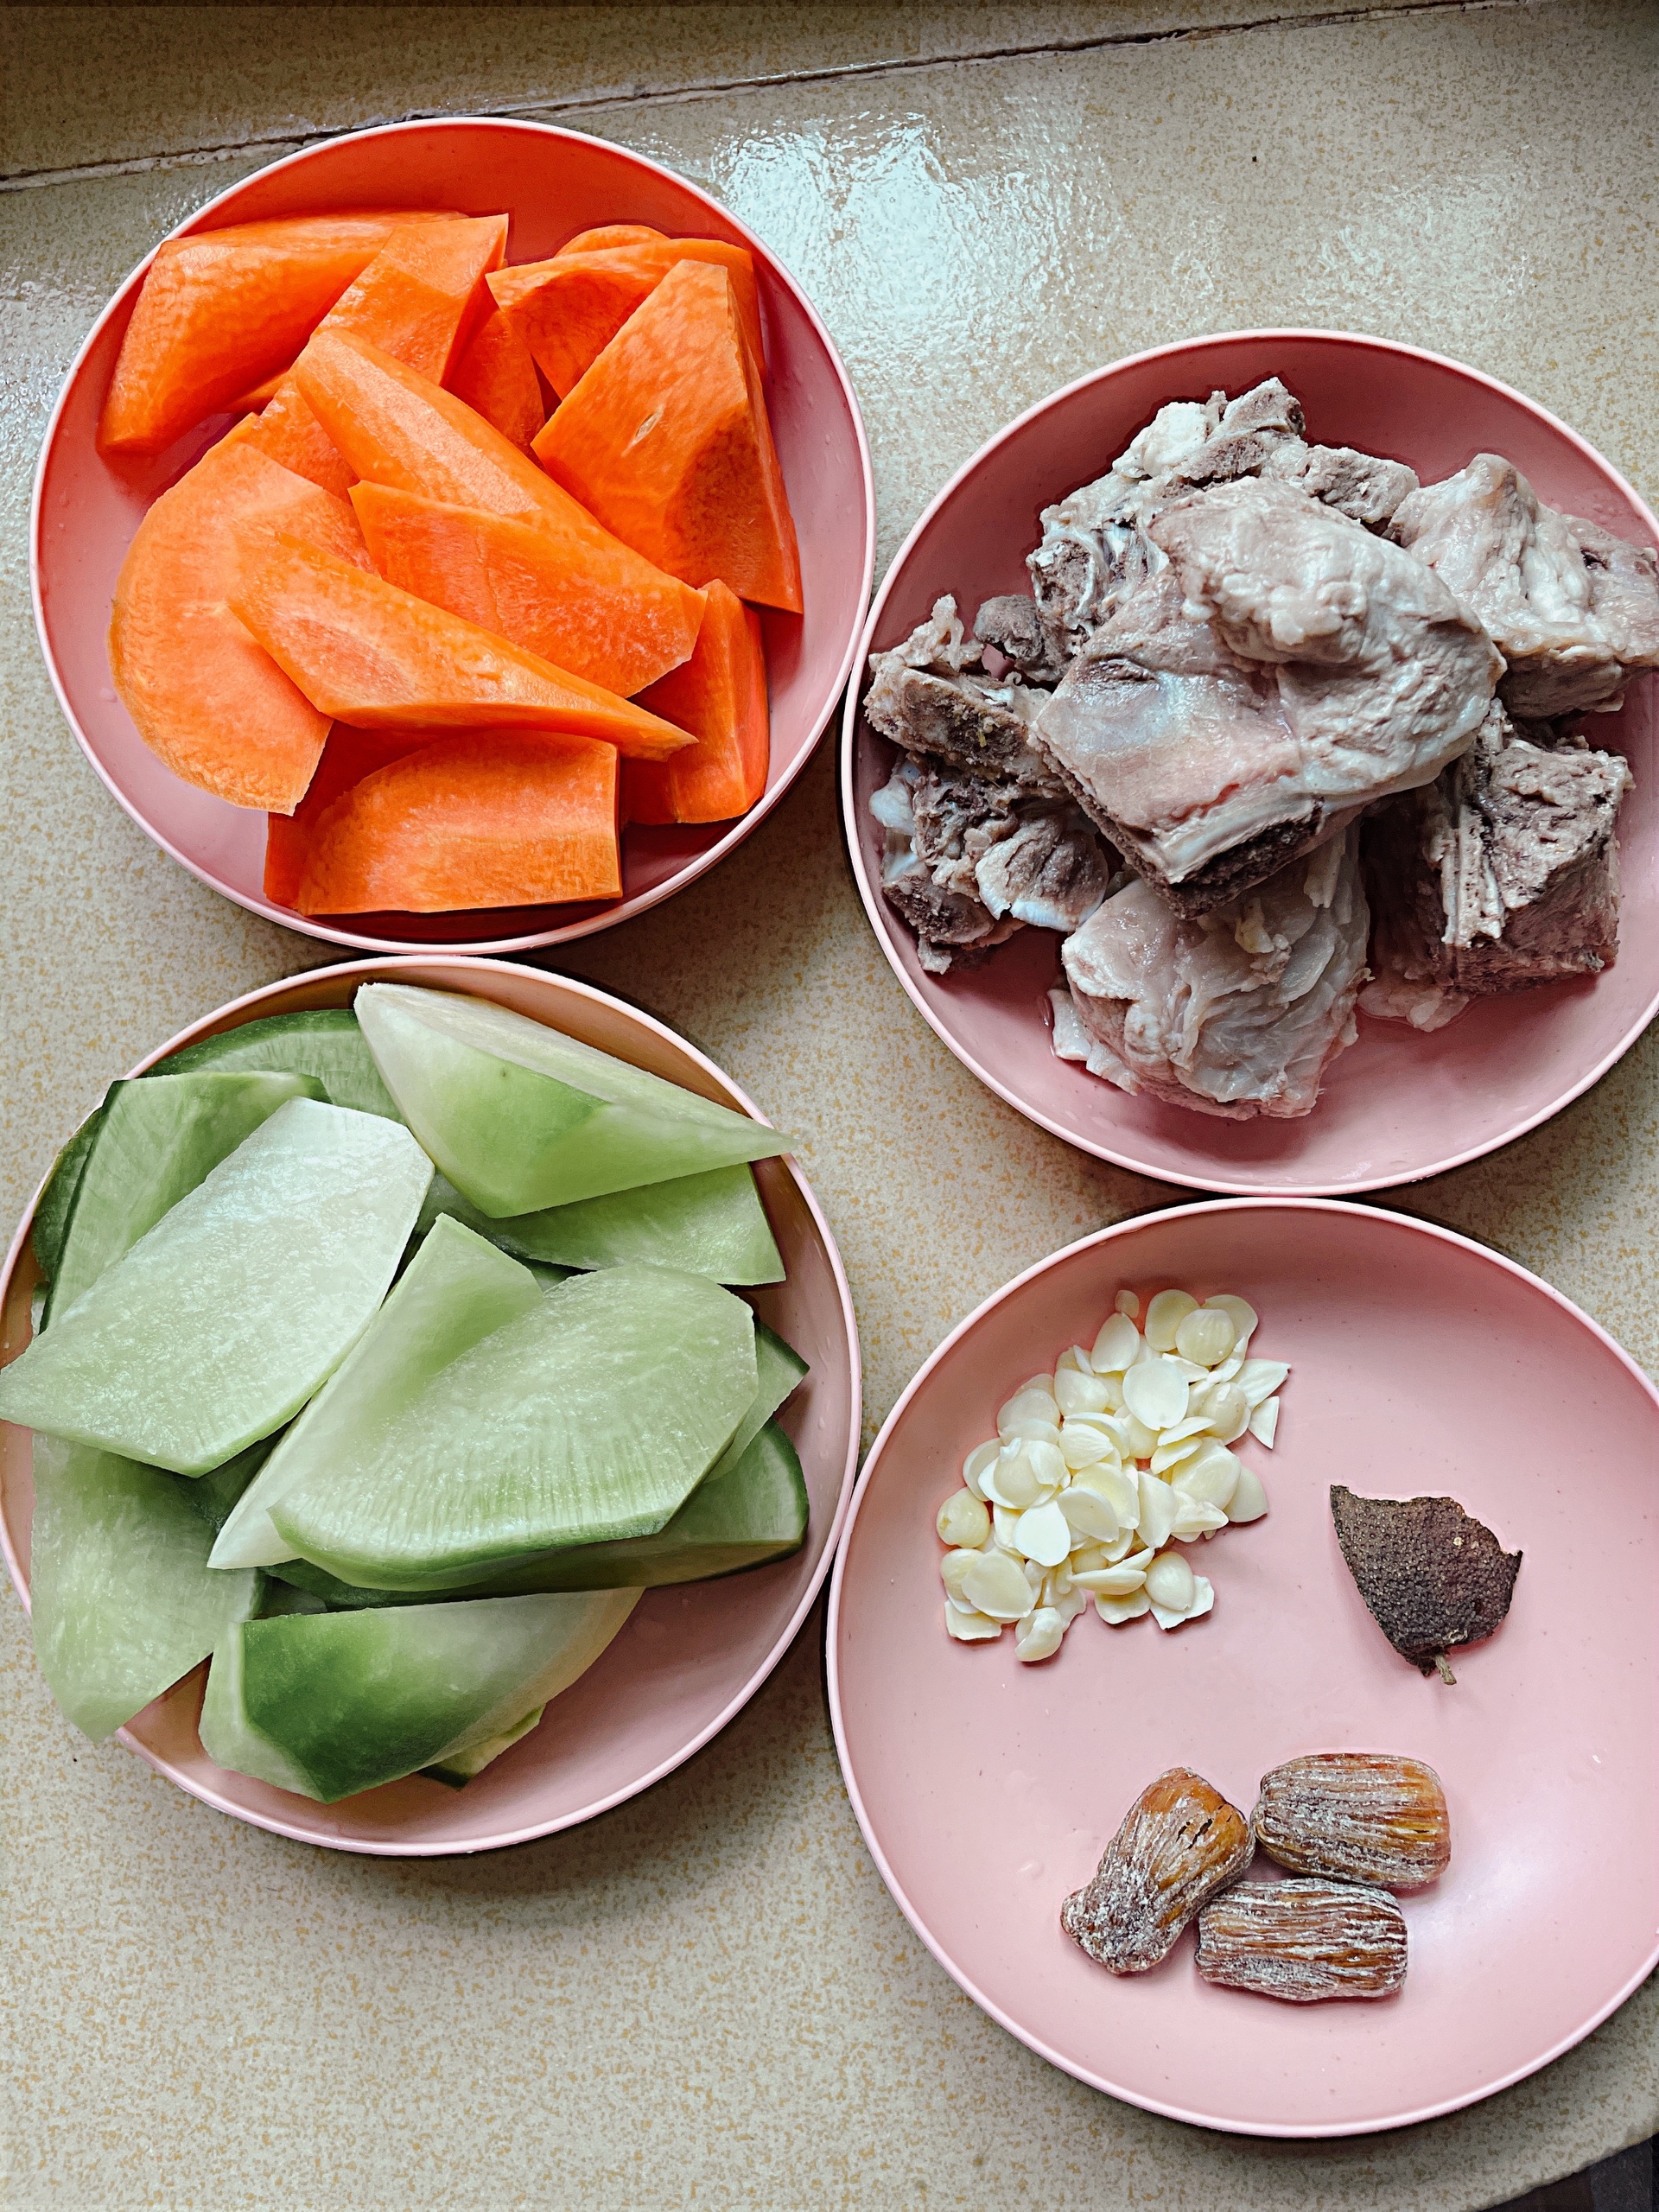 老广靓汤👉青红萝卜猪骨汤的做法